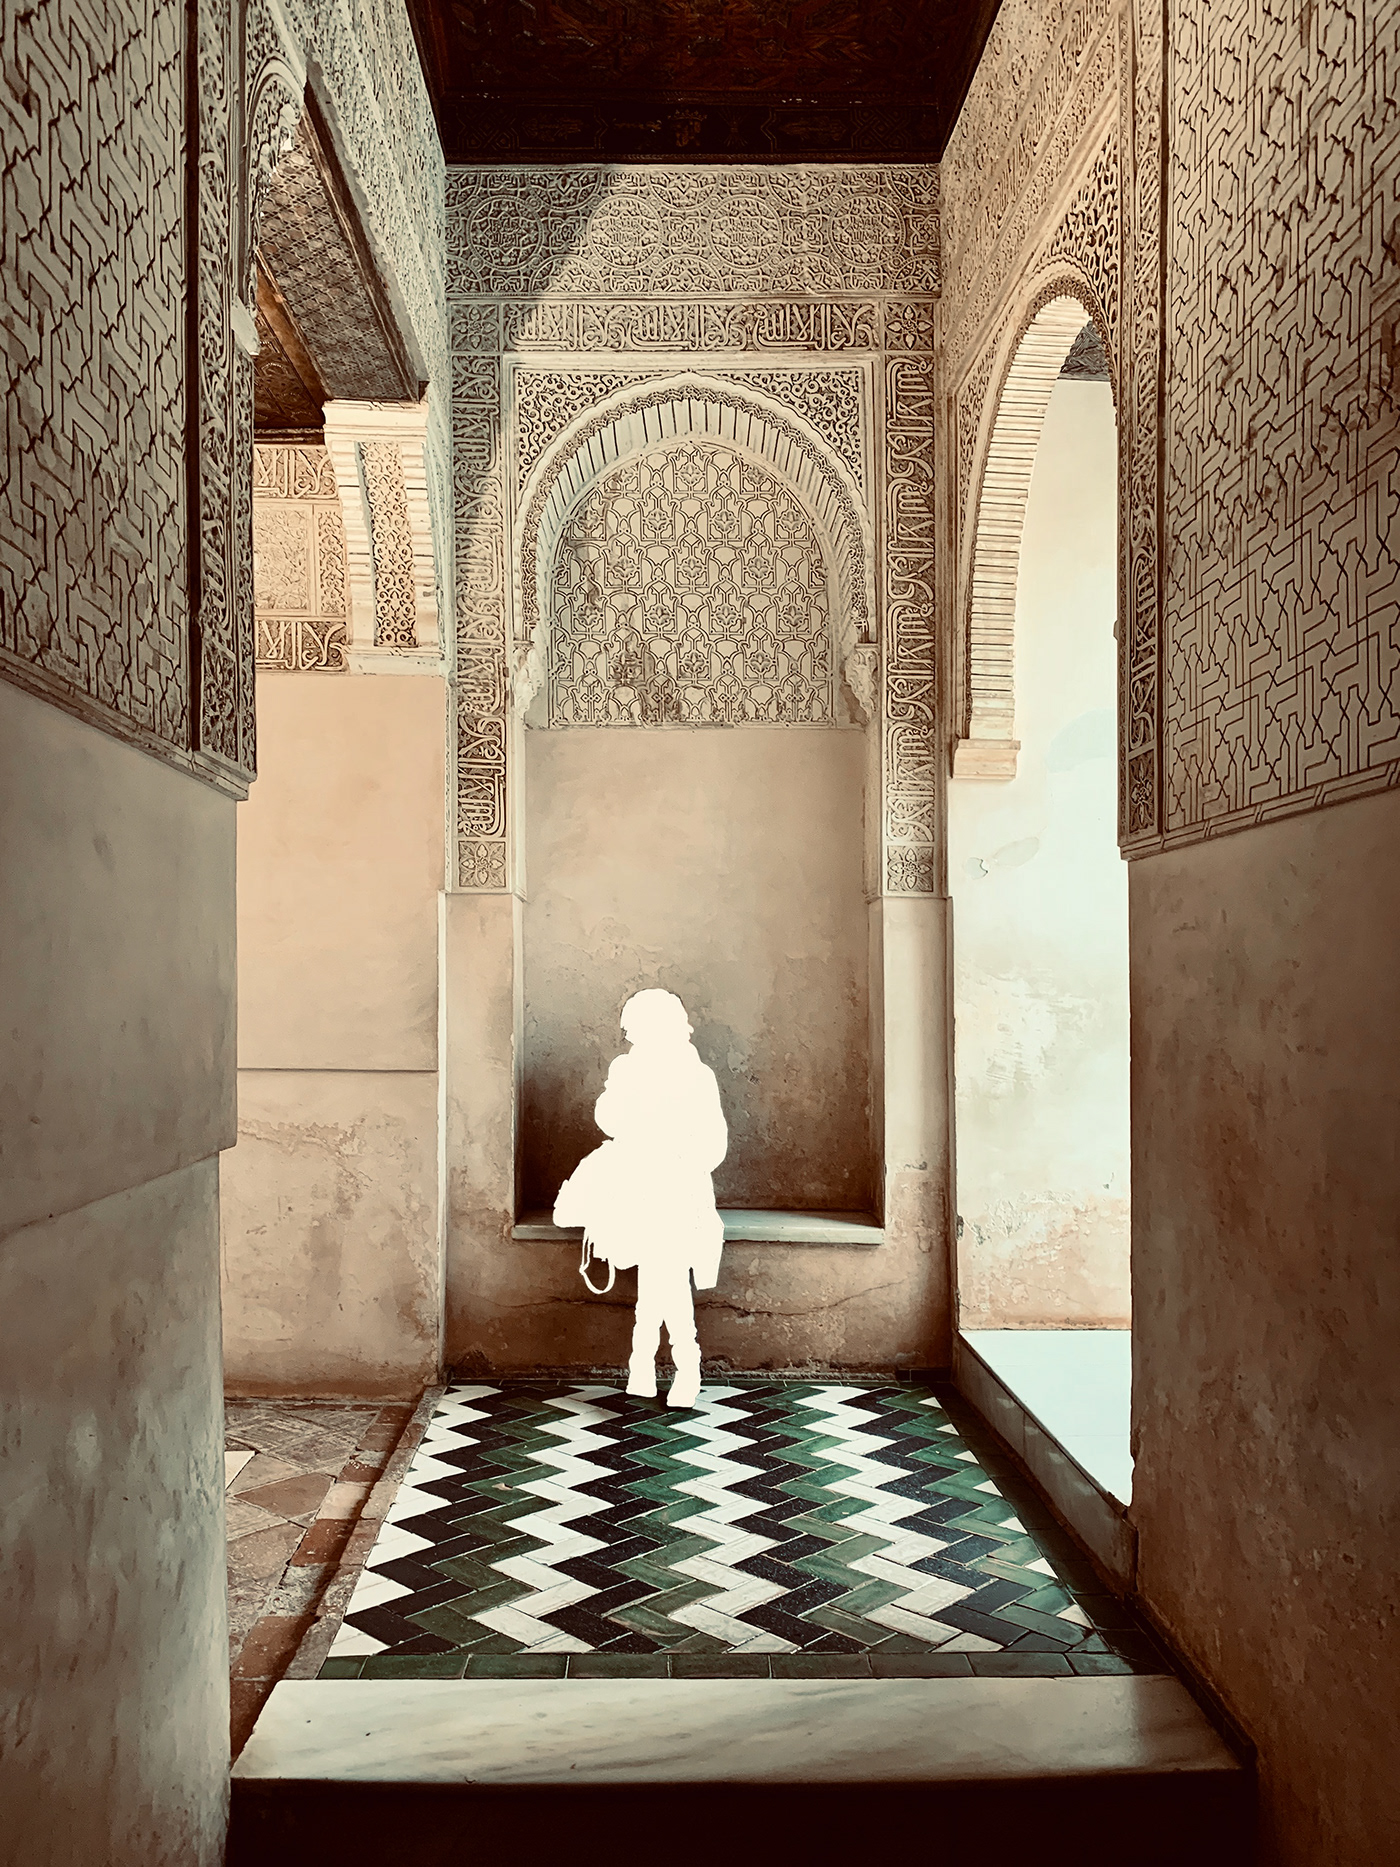 Alhambra arquitectura architecture historia history arabe arabic granada spain